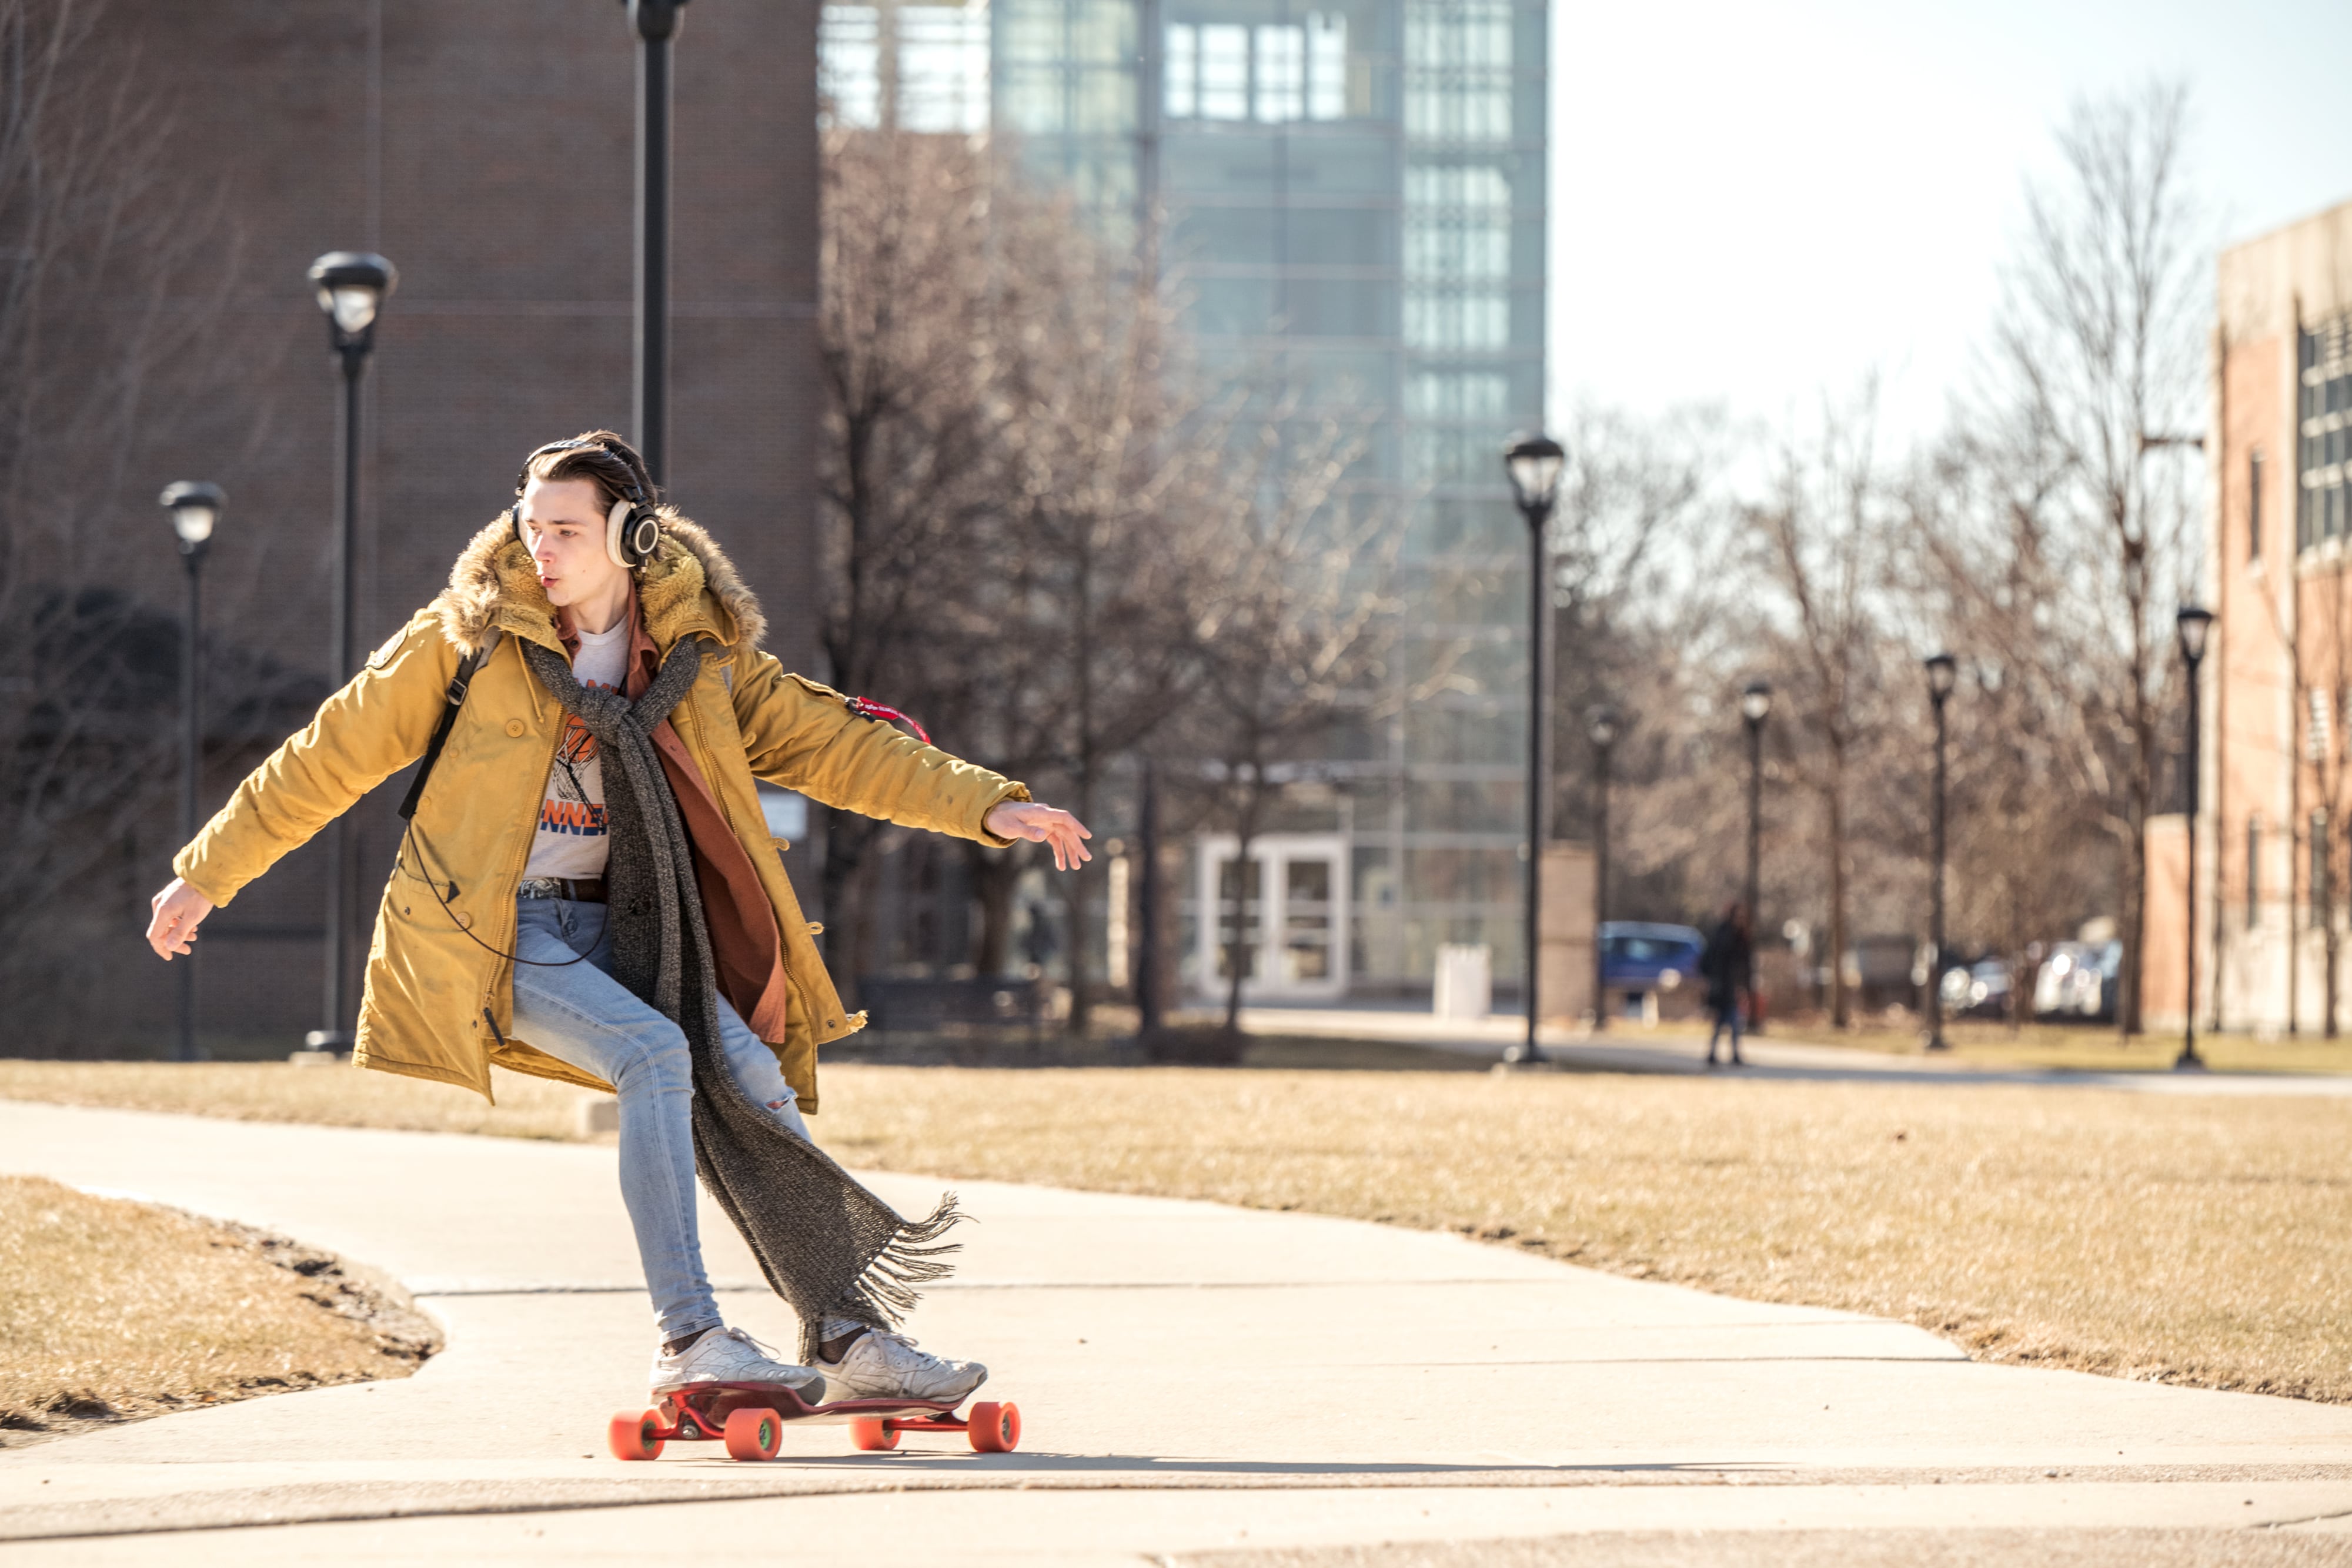 Guy on Skateboard